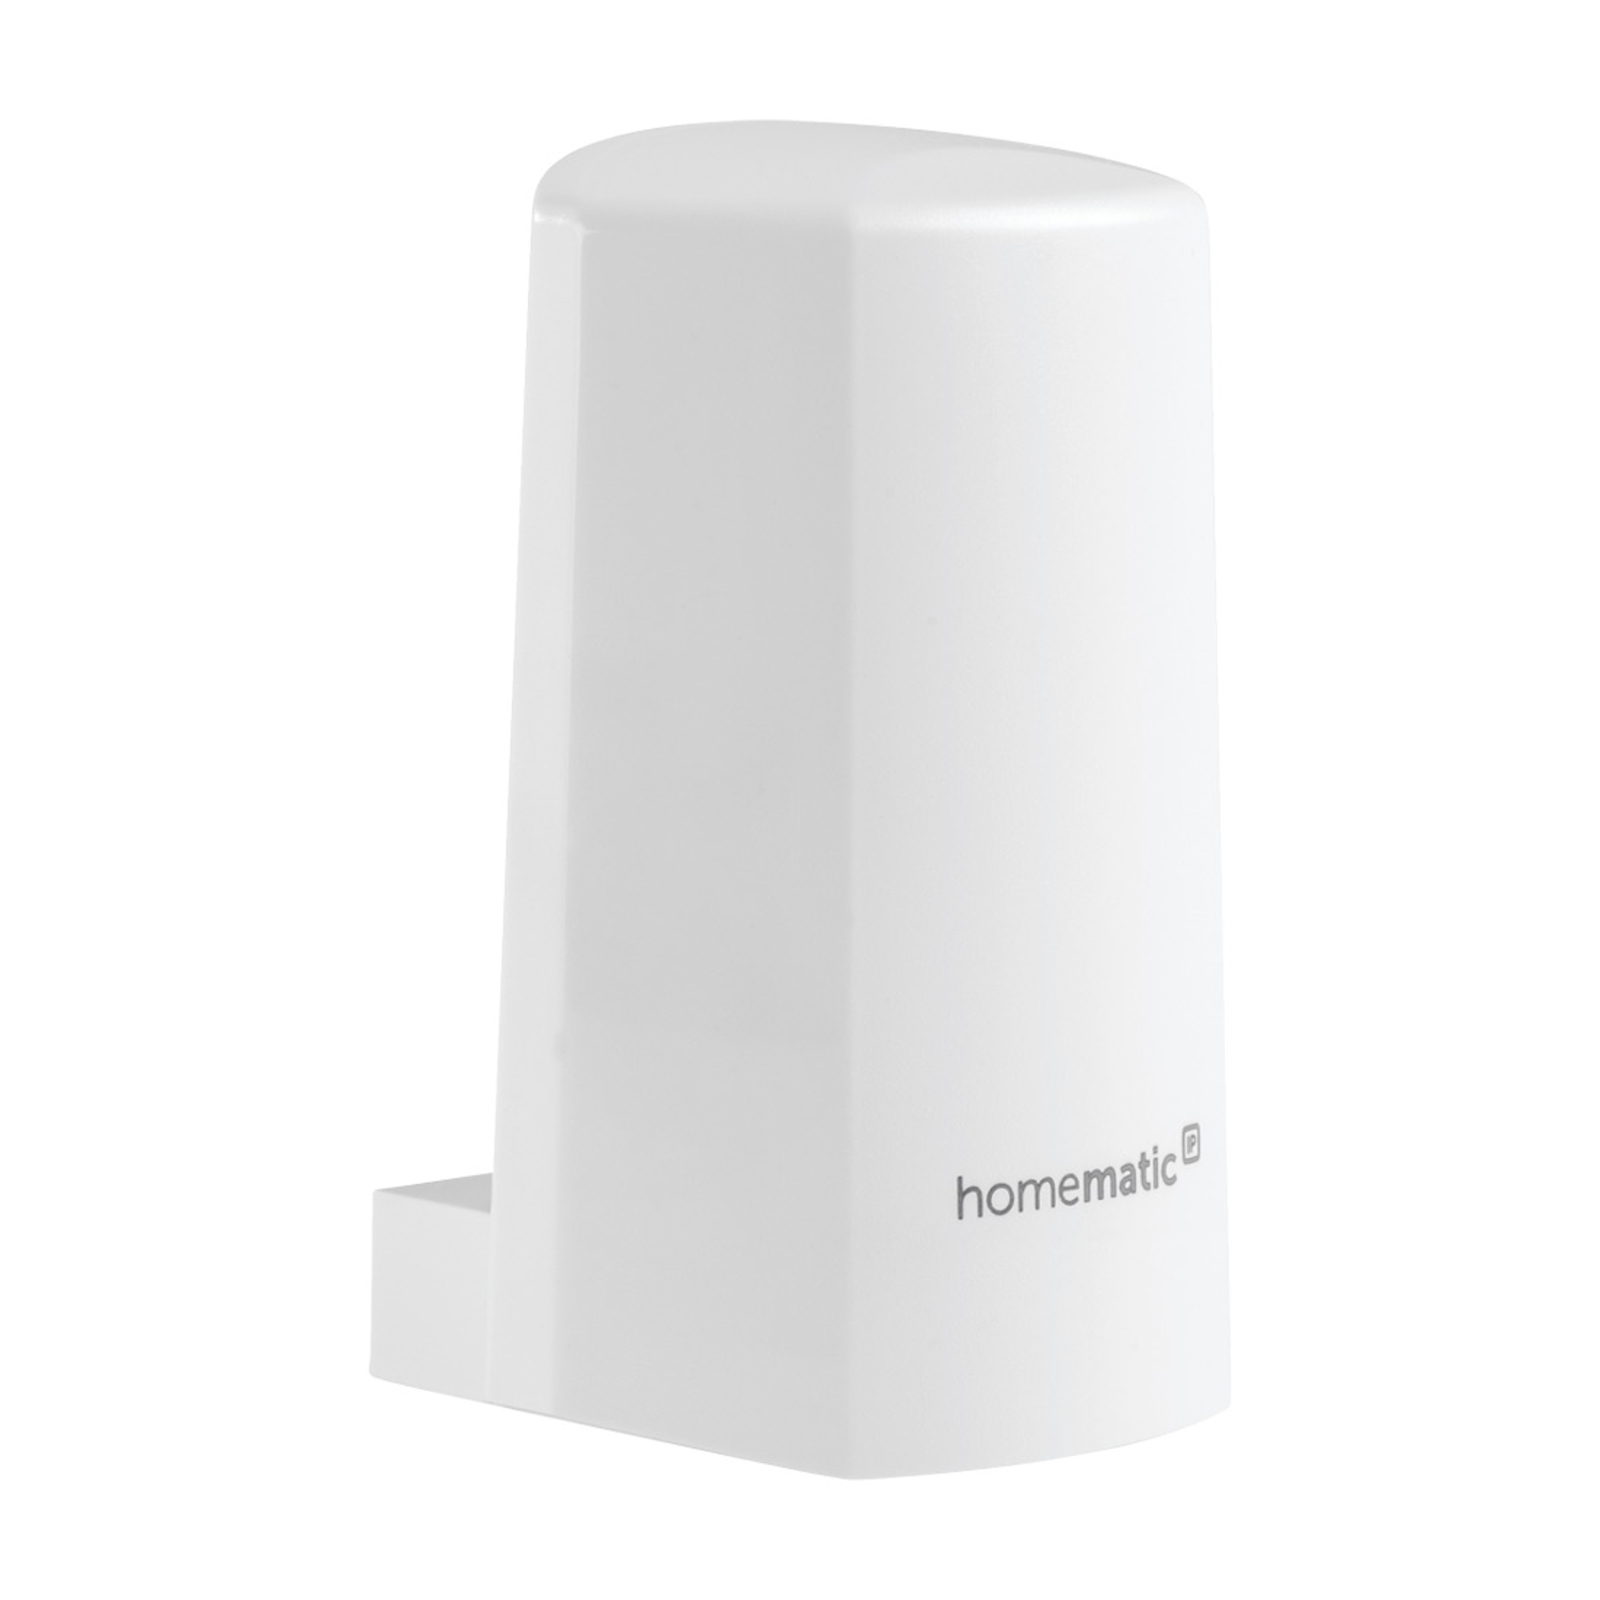 Homematic IP capteur temp./humidité ext. blanc